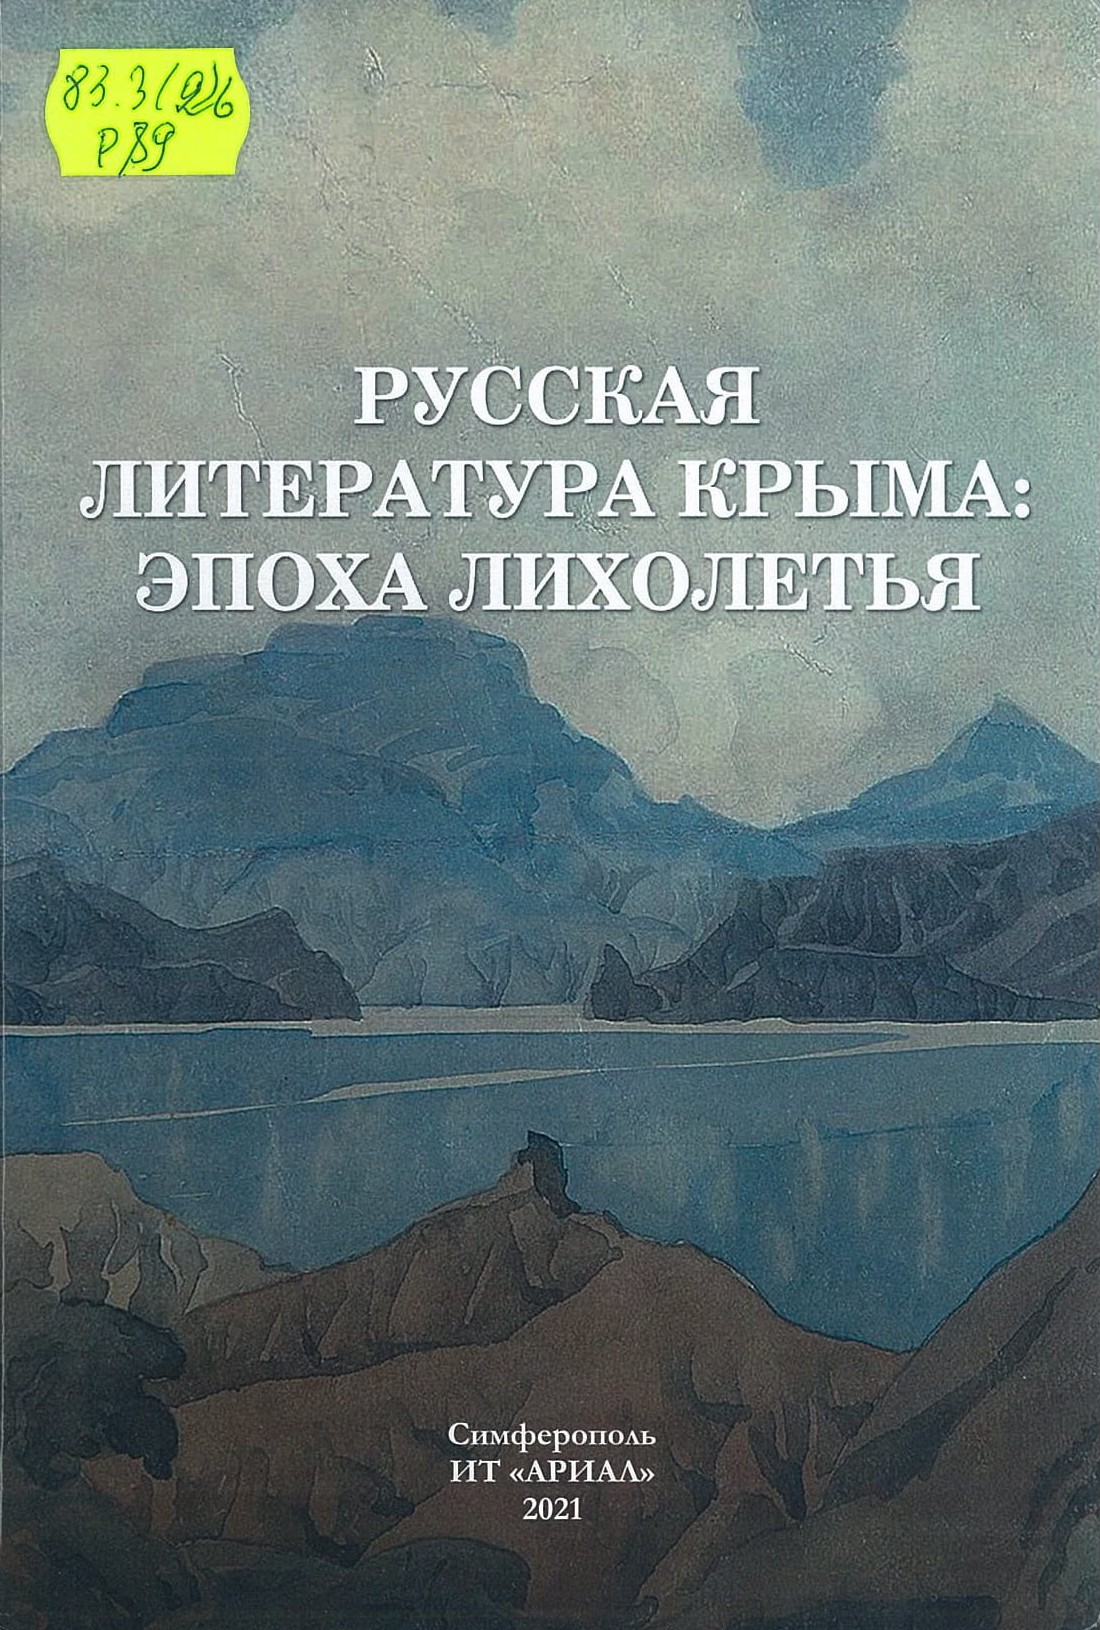 Русская литература Крыма: эпоха лихолетья